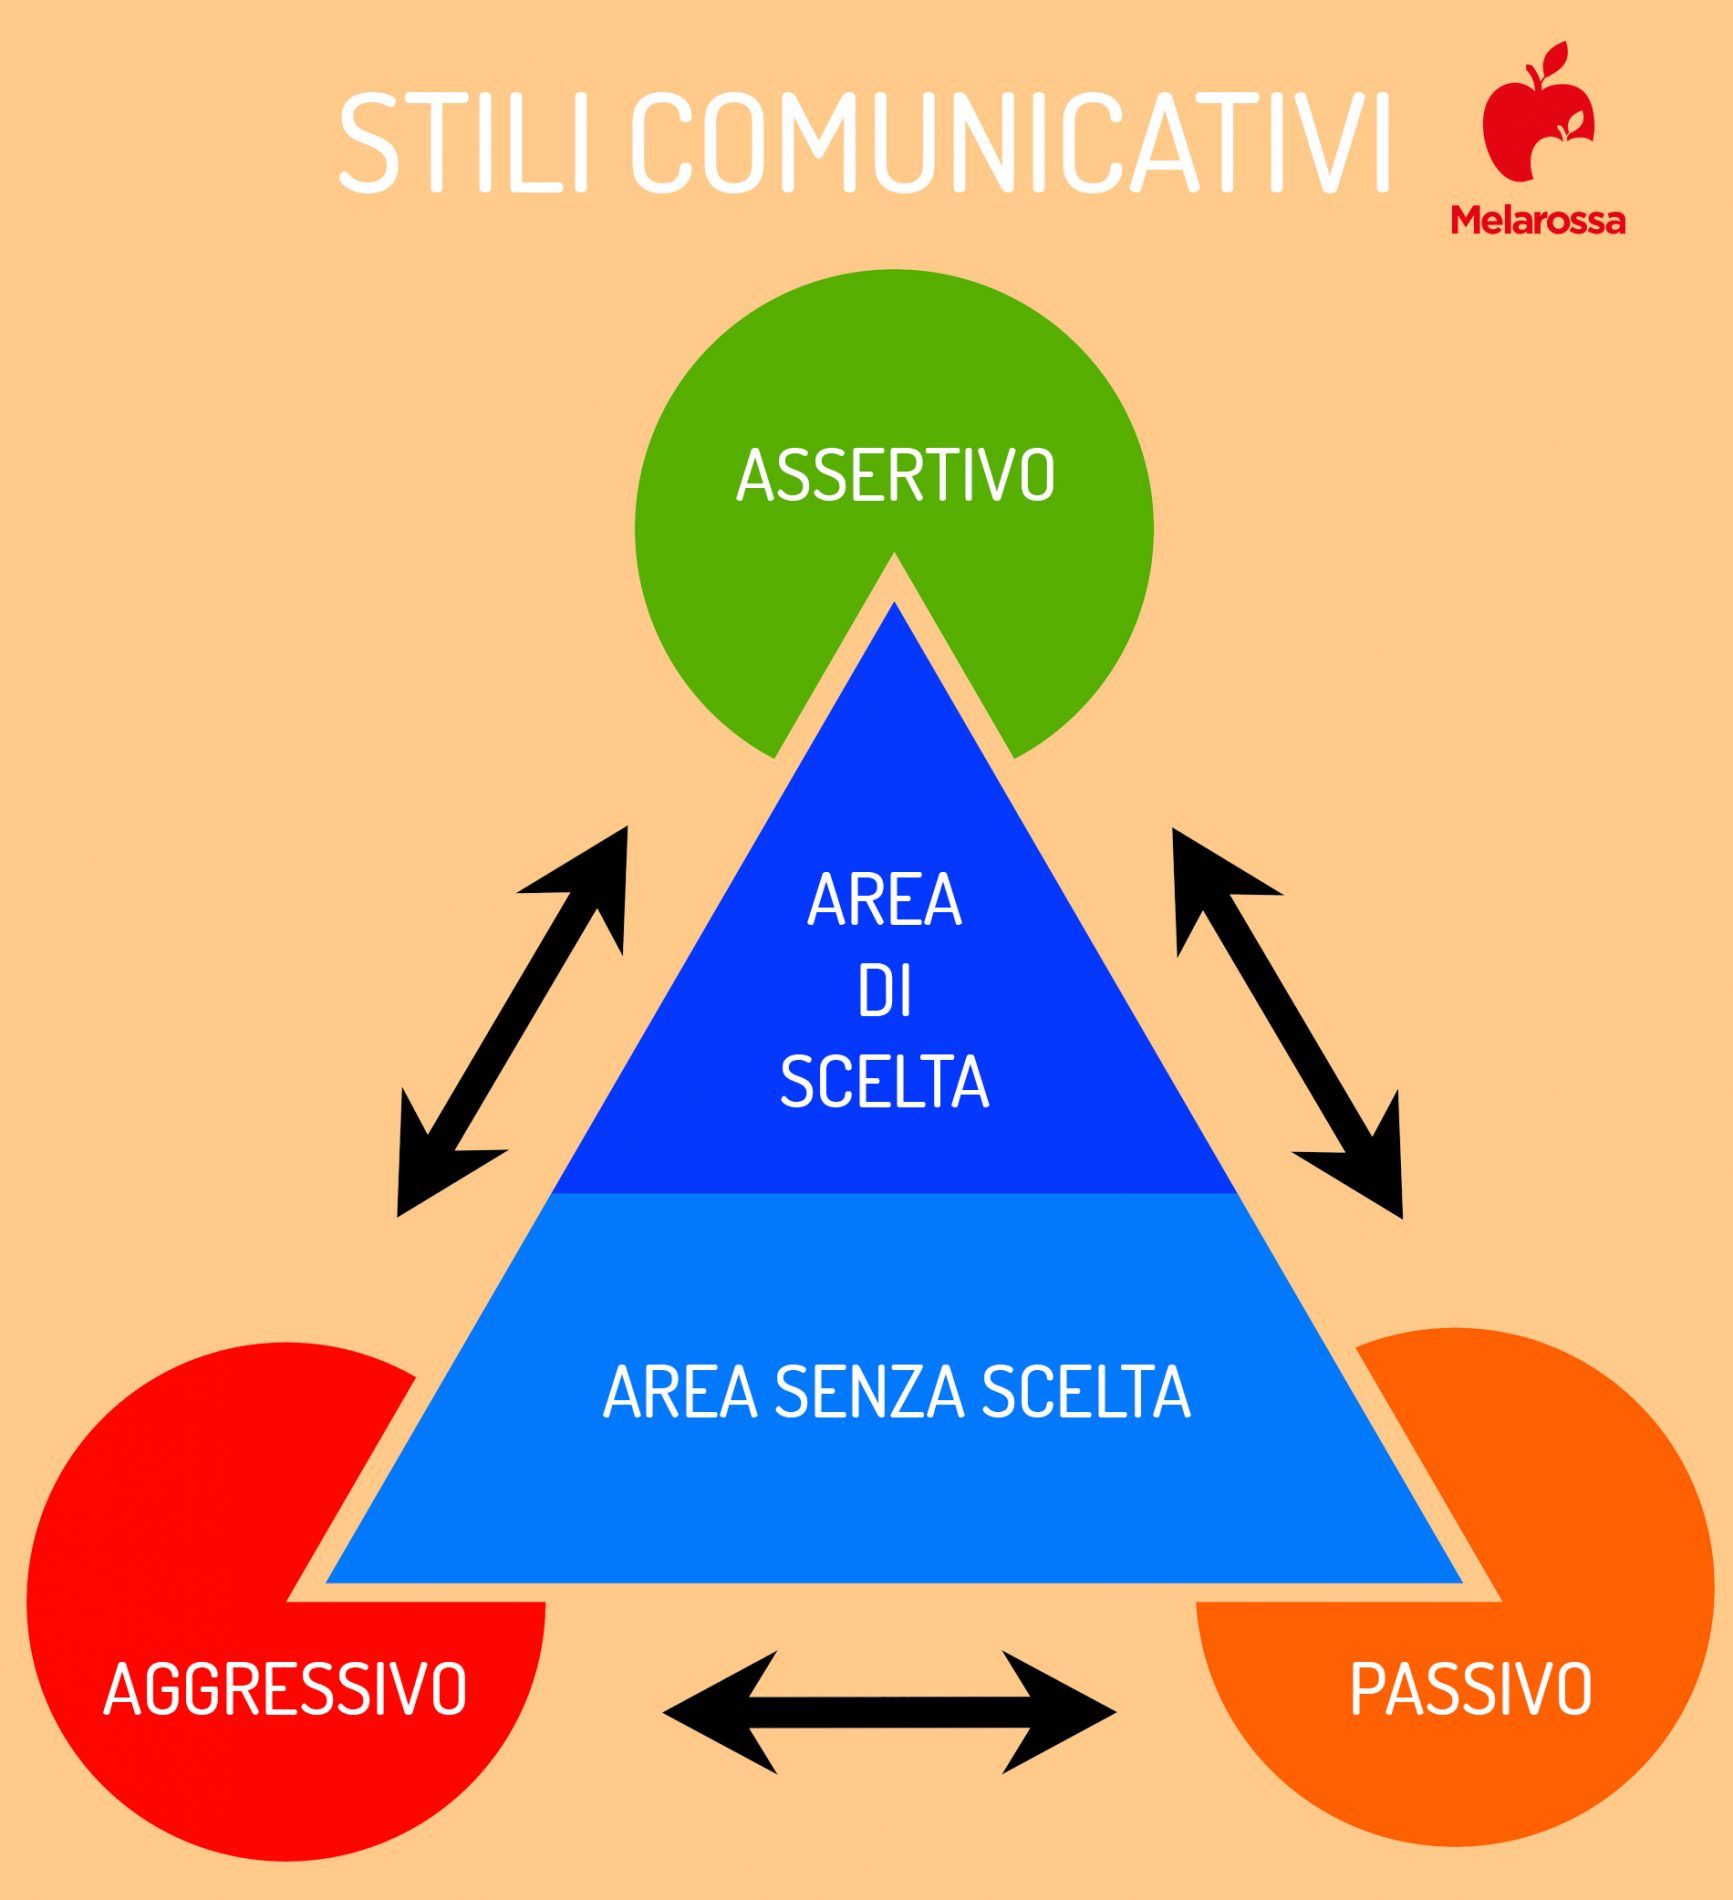 assertività: stili comunicativi passivi e aggressivi come si comportano 